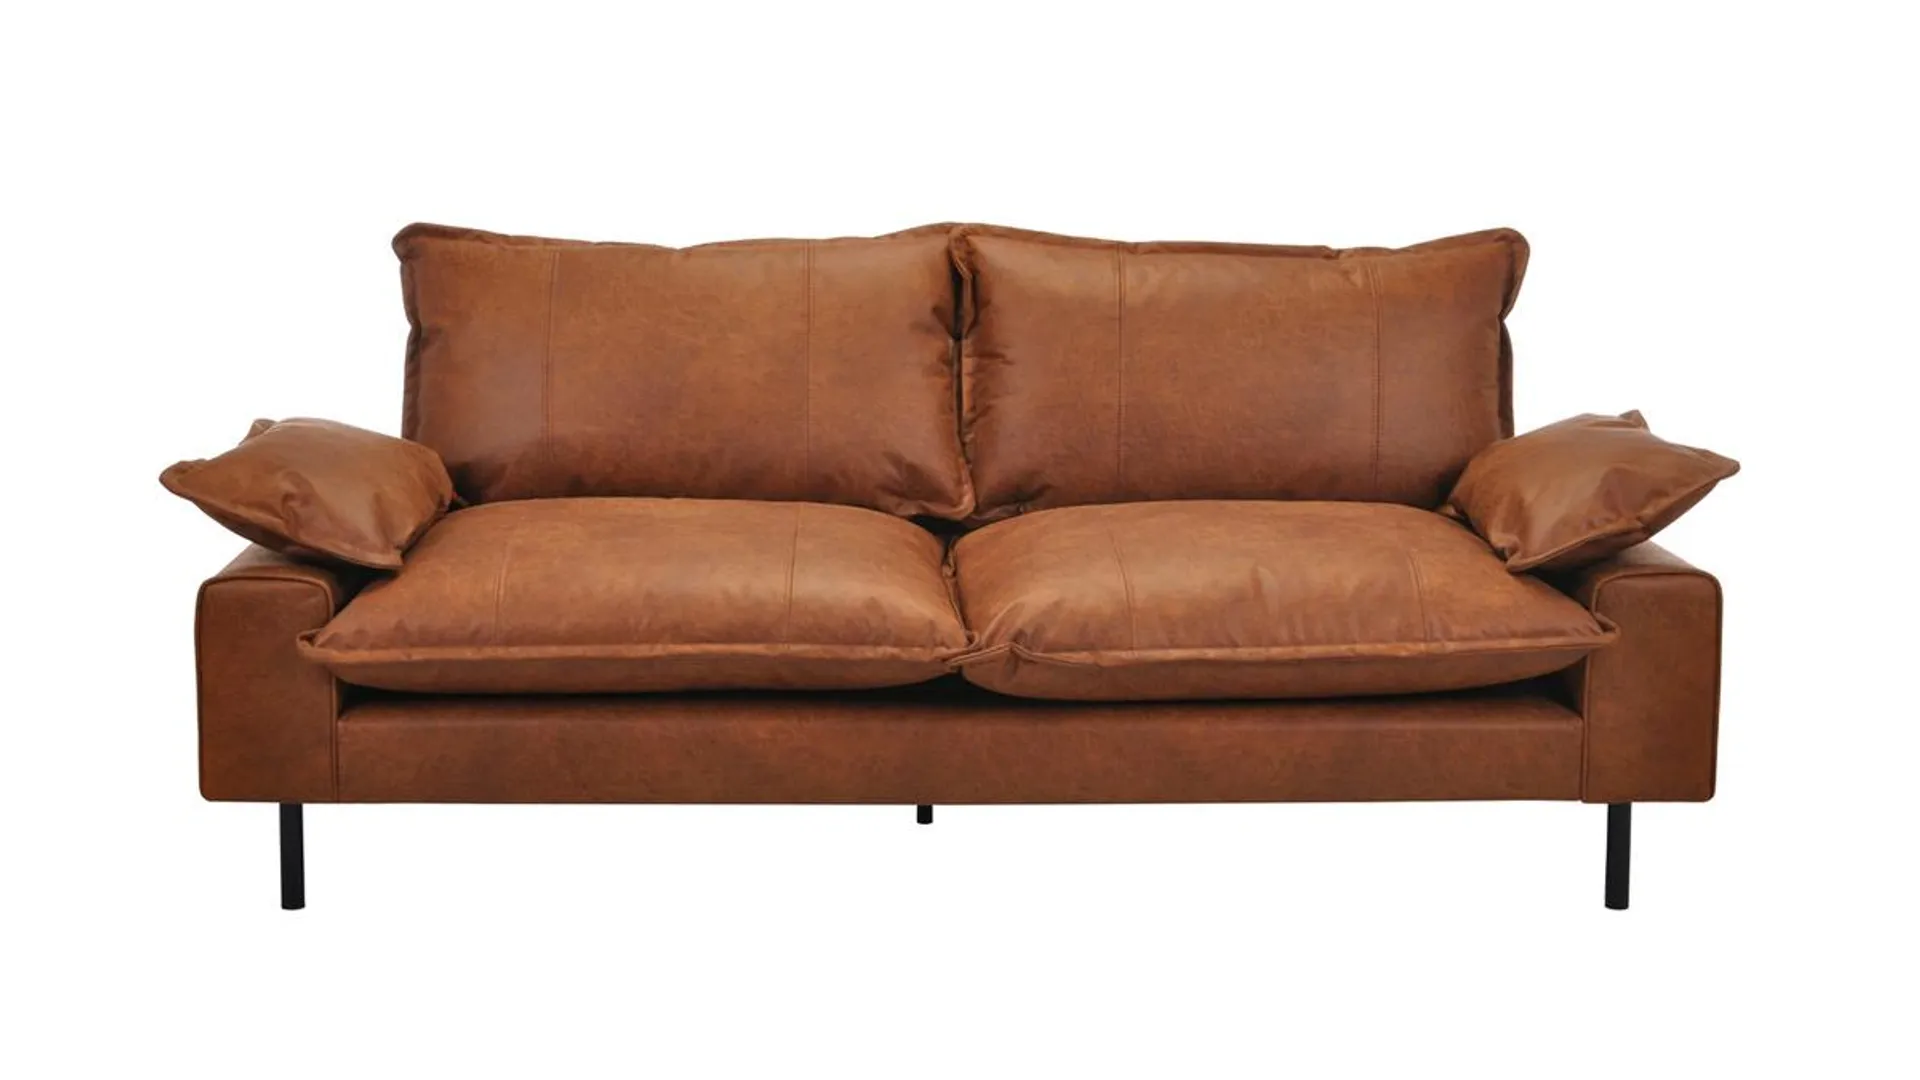 Canapé 3 places en cuir aspect vieilli marron cognac et métal noir DORY